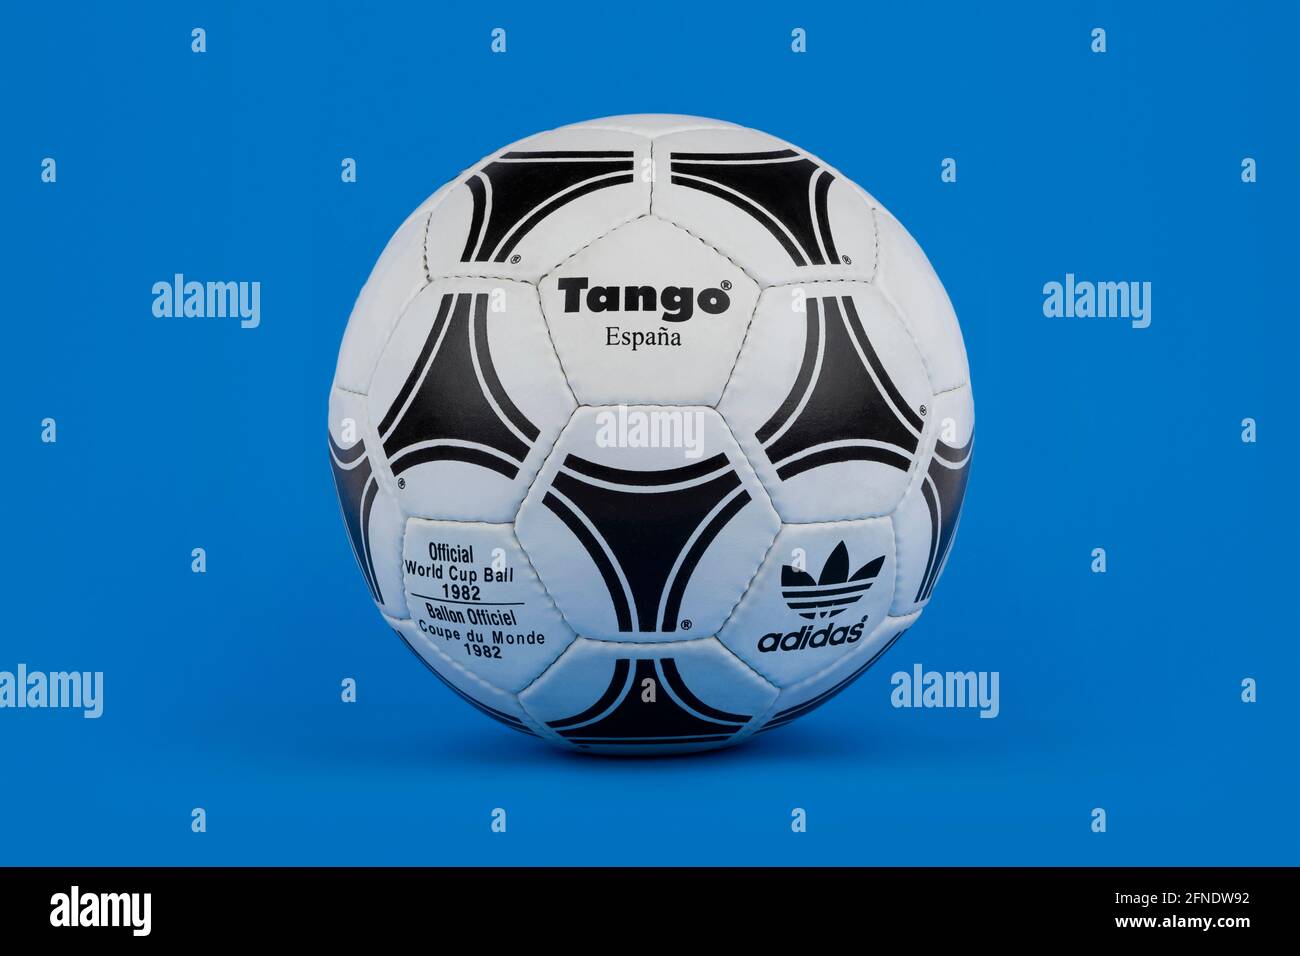 Un pallone da calcio Adidas Tango Espana rilasciato per la Coppa del mondo  FIFA 1982, girato su sfondo blu Foto stock - Alamy